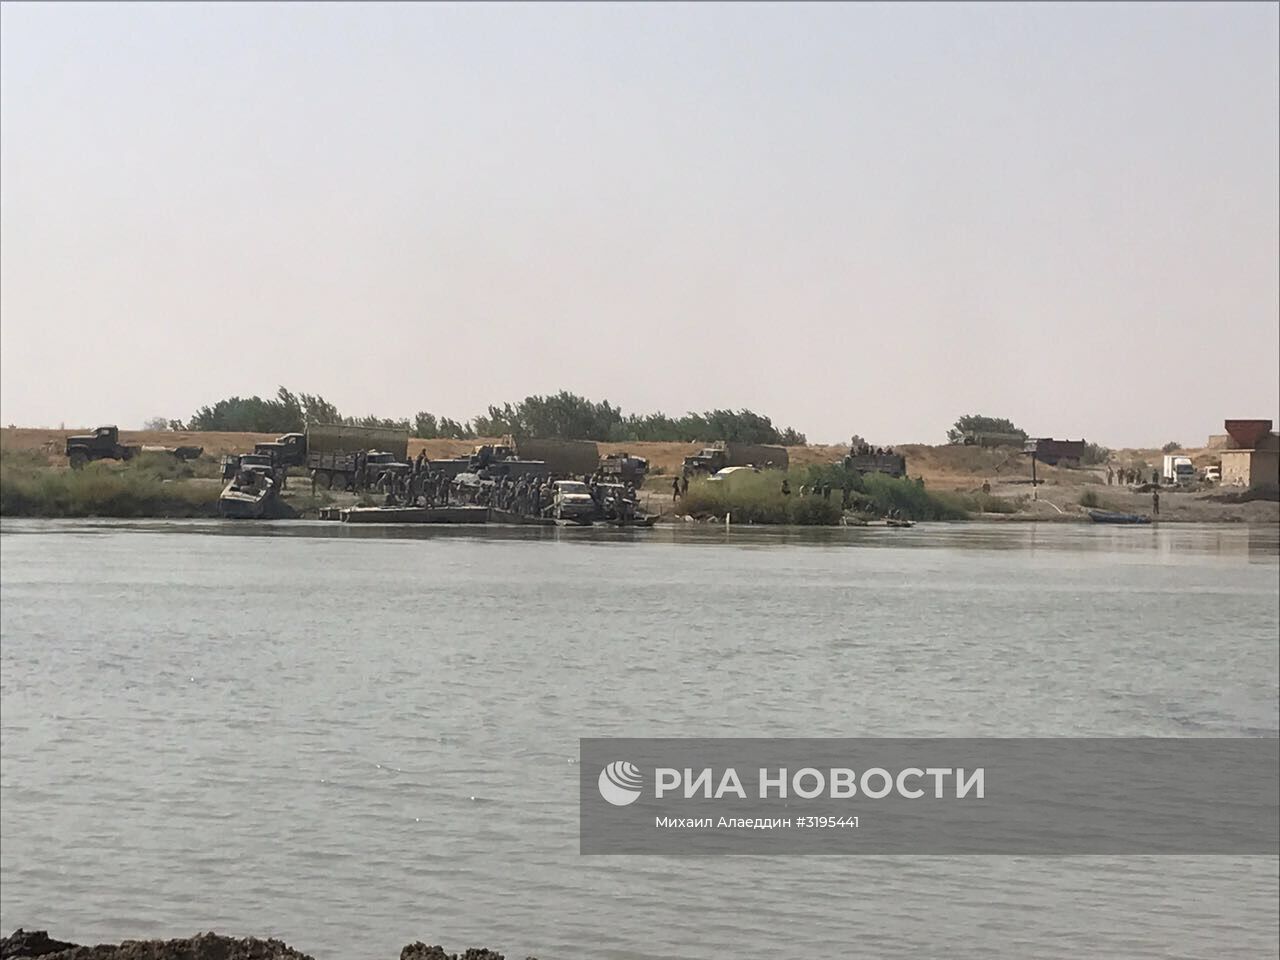 Сирийская армия форсировала реку Ефрат в районе Дейр-эз-Зора